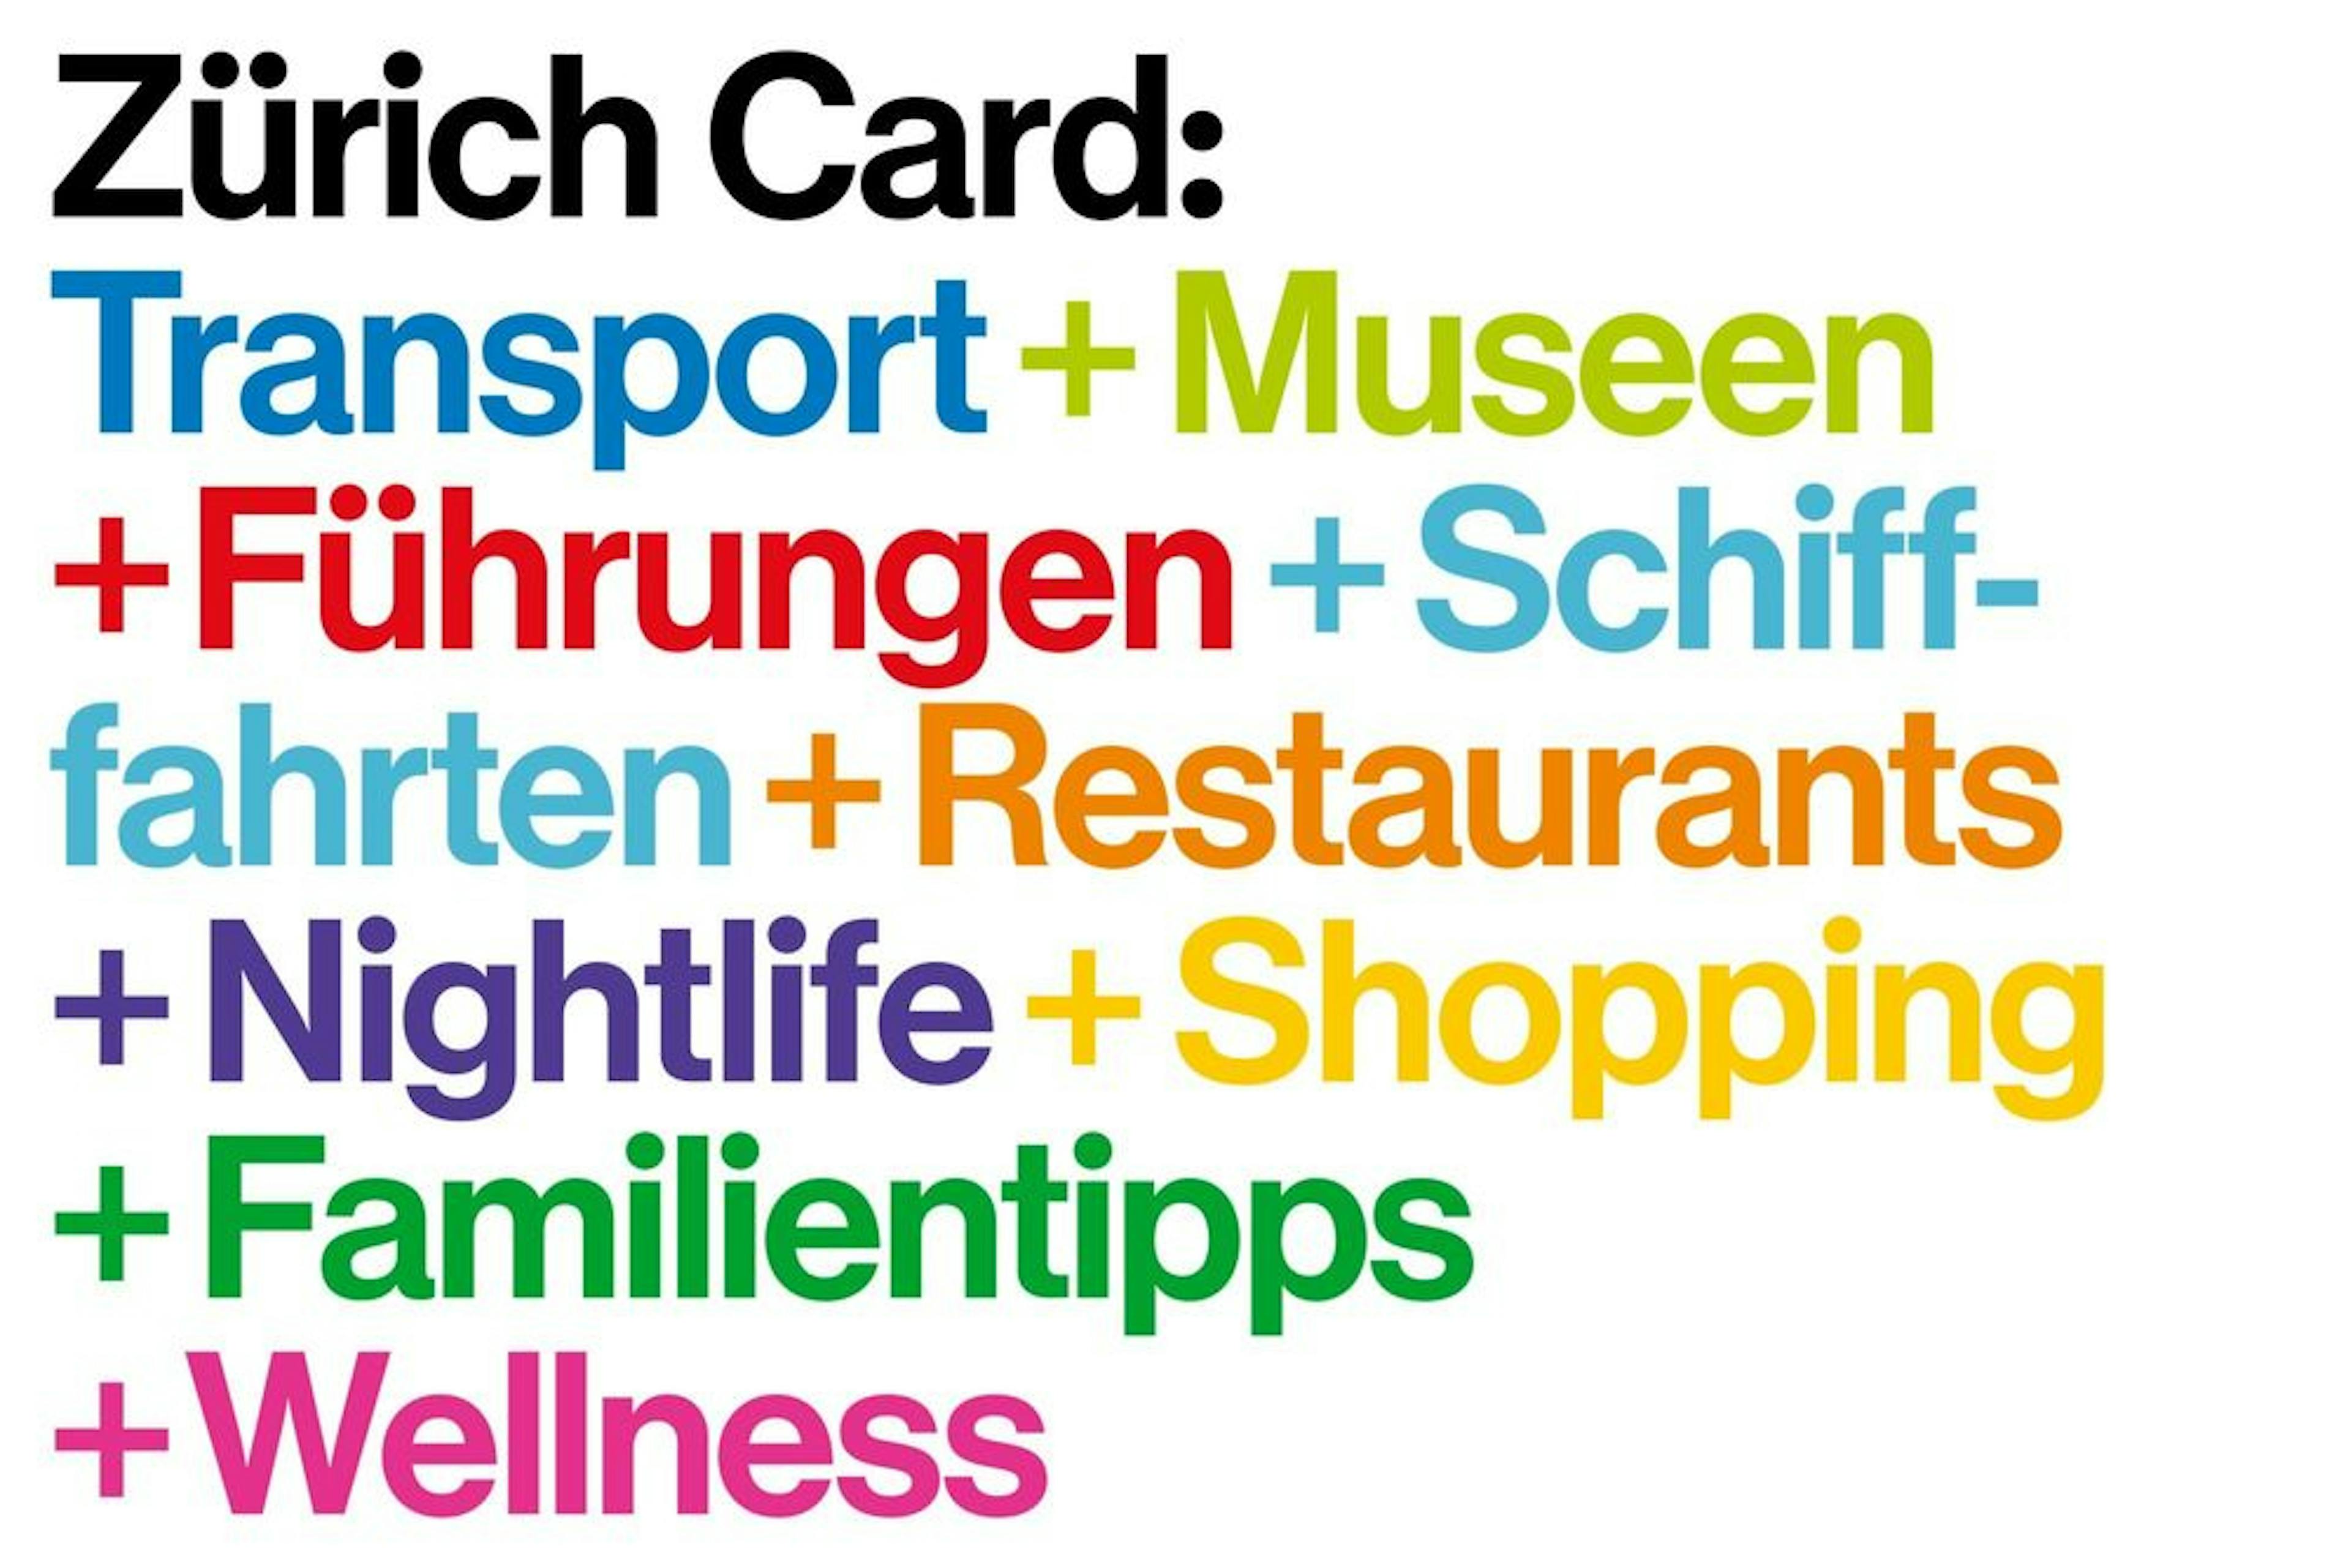 Zurich Card